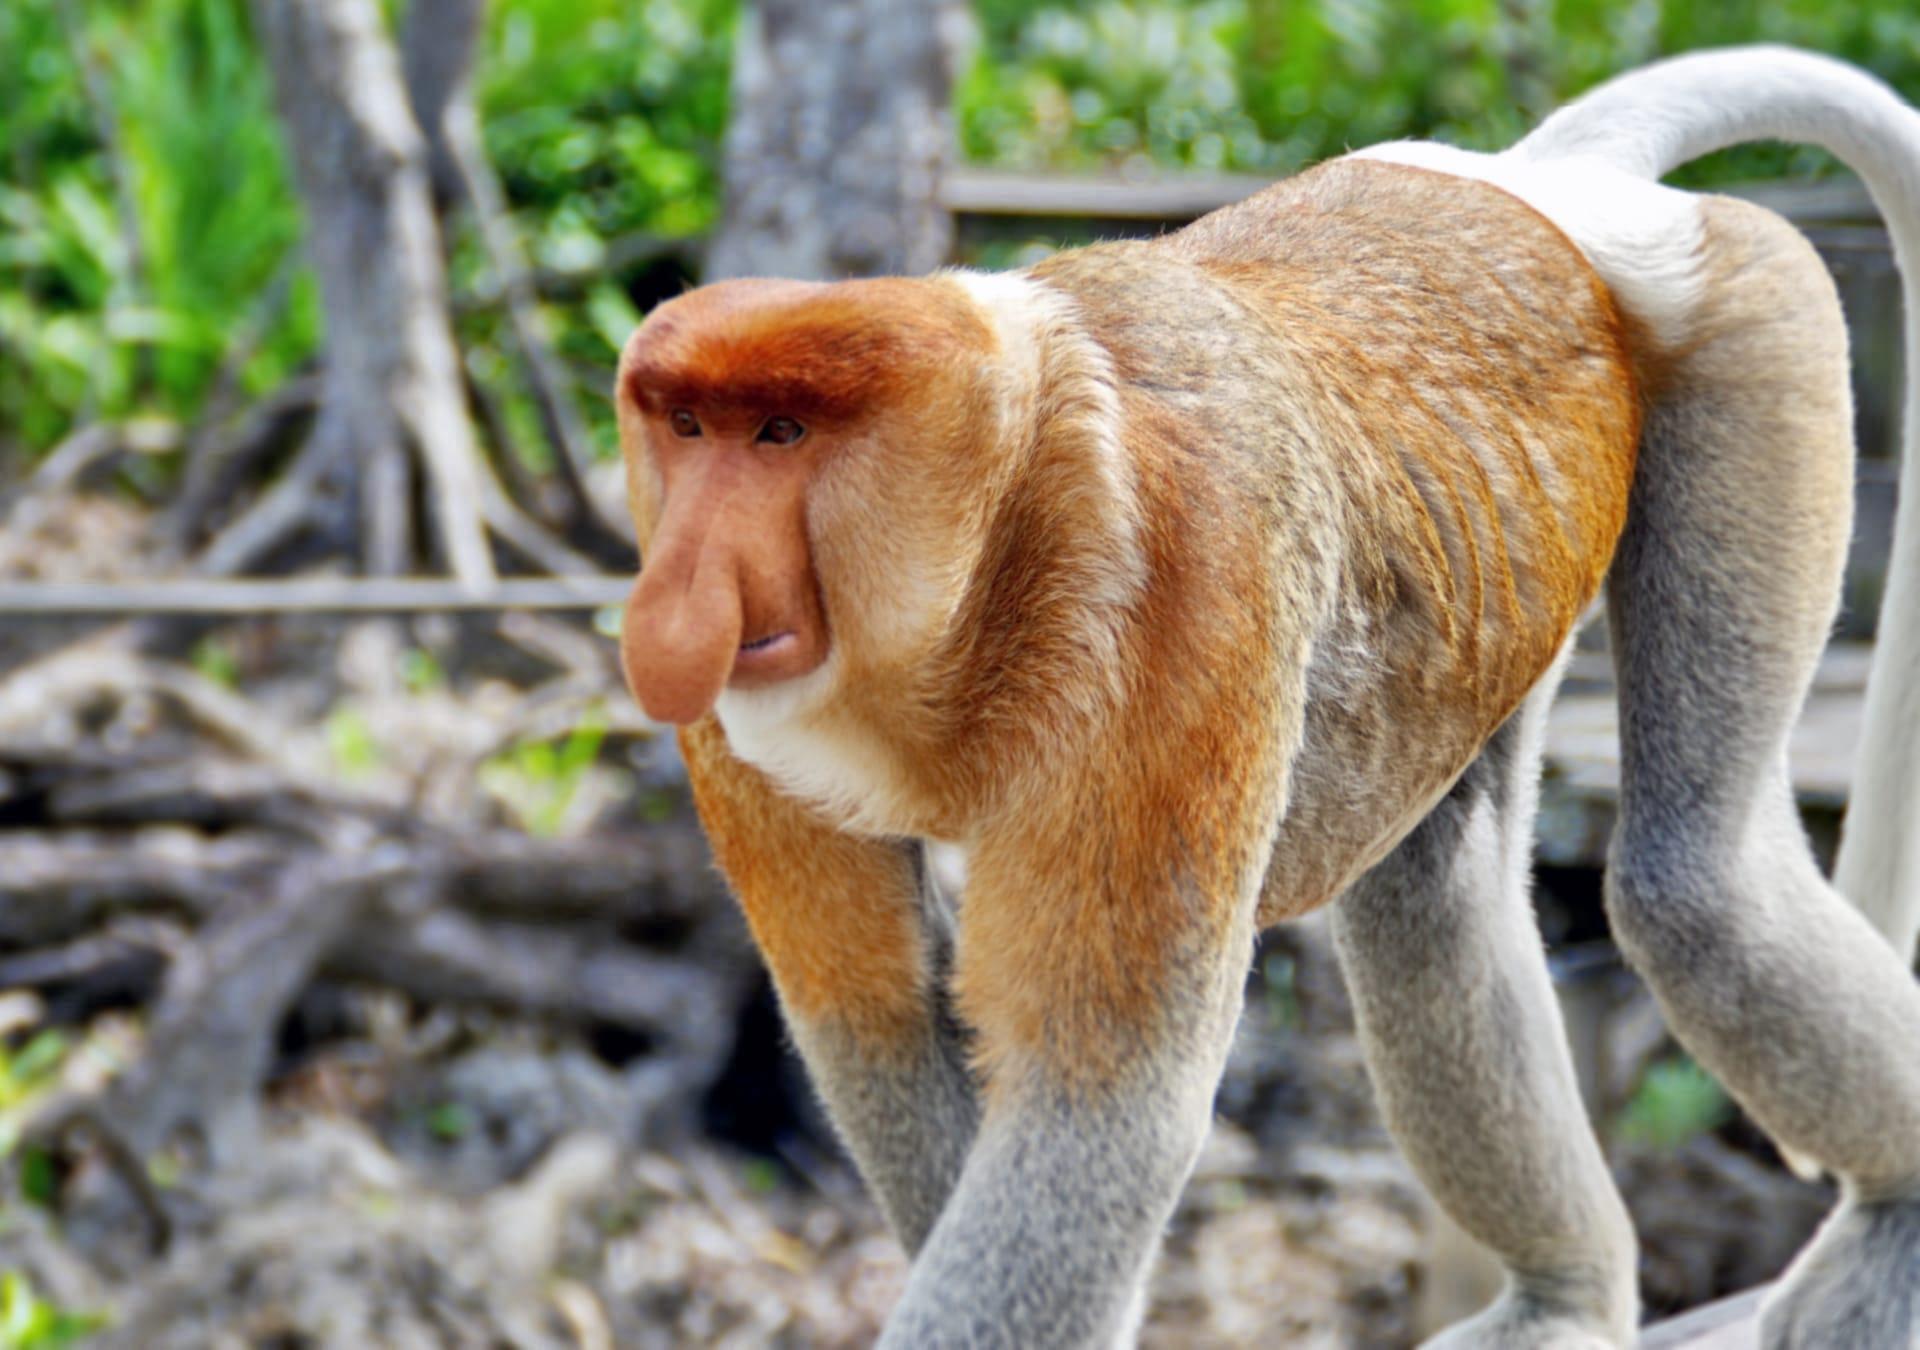 Proboscis monkey pictures